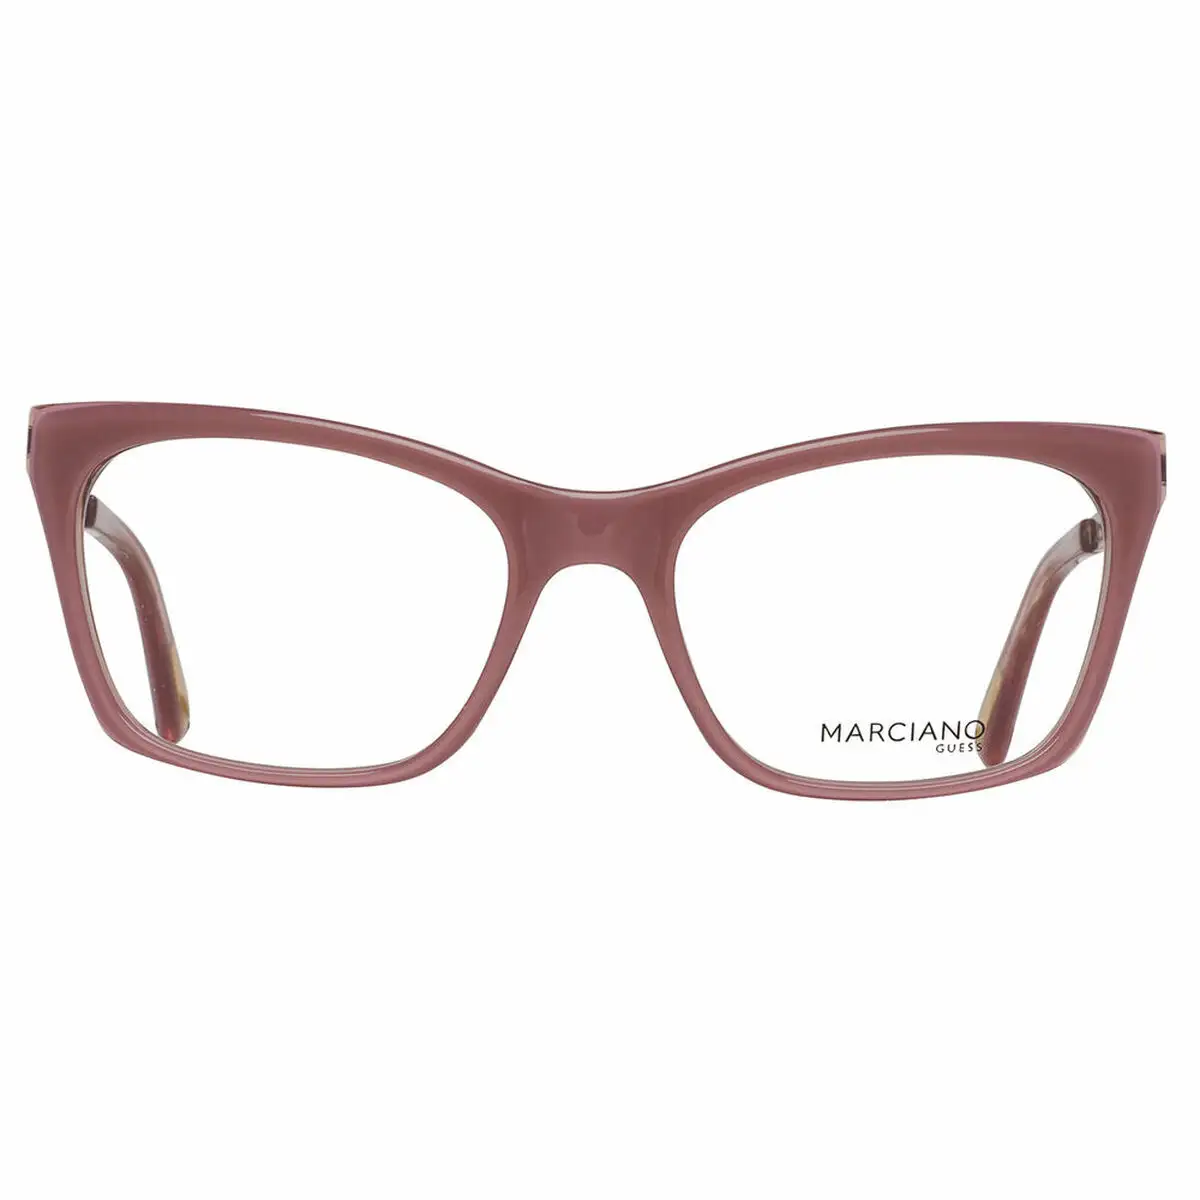 Monture de lunettes femme guess marciano gm0267 53072_8708. DIAYTAR SENEGAL - Là où le Chic Rencontre la Tradition. Naviguez à travers notre catalogue et choisissez des produits qui équilibrent l'élégance intemporelle et l'innovation moderne.